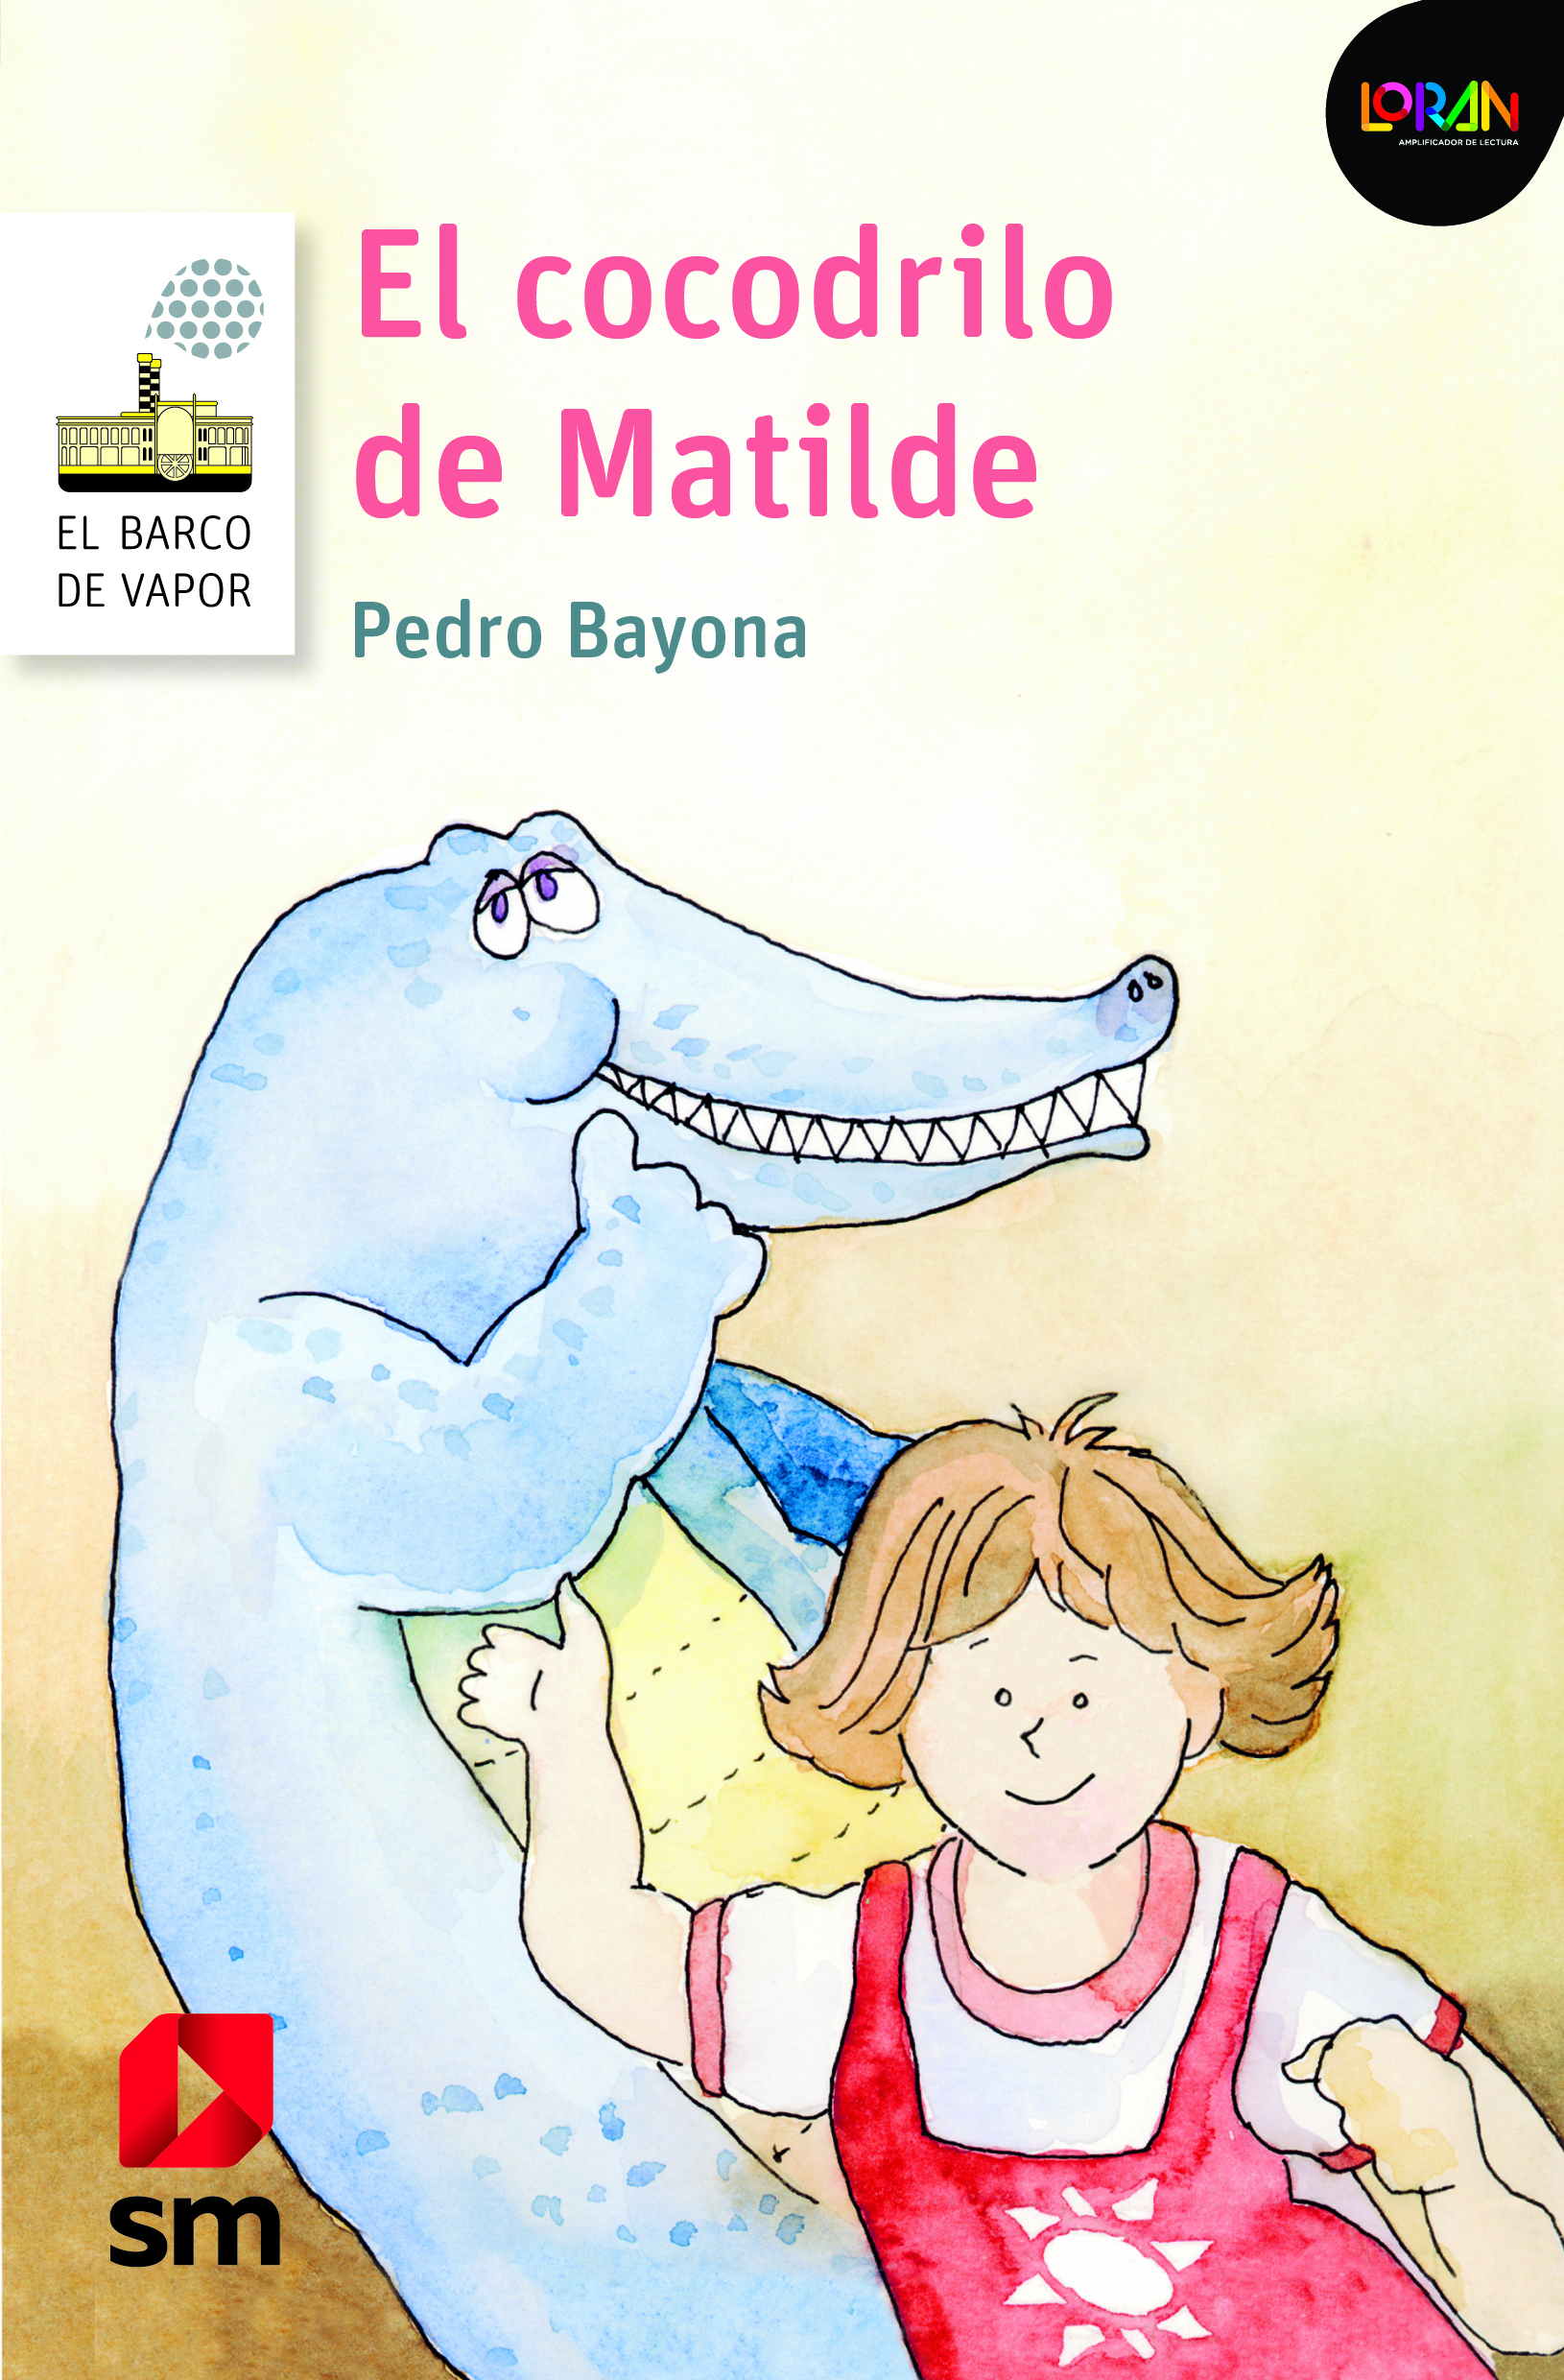 El cocodrilo de Matilde. Libro digital LORAN